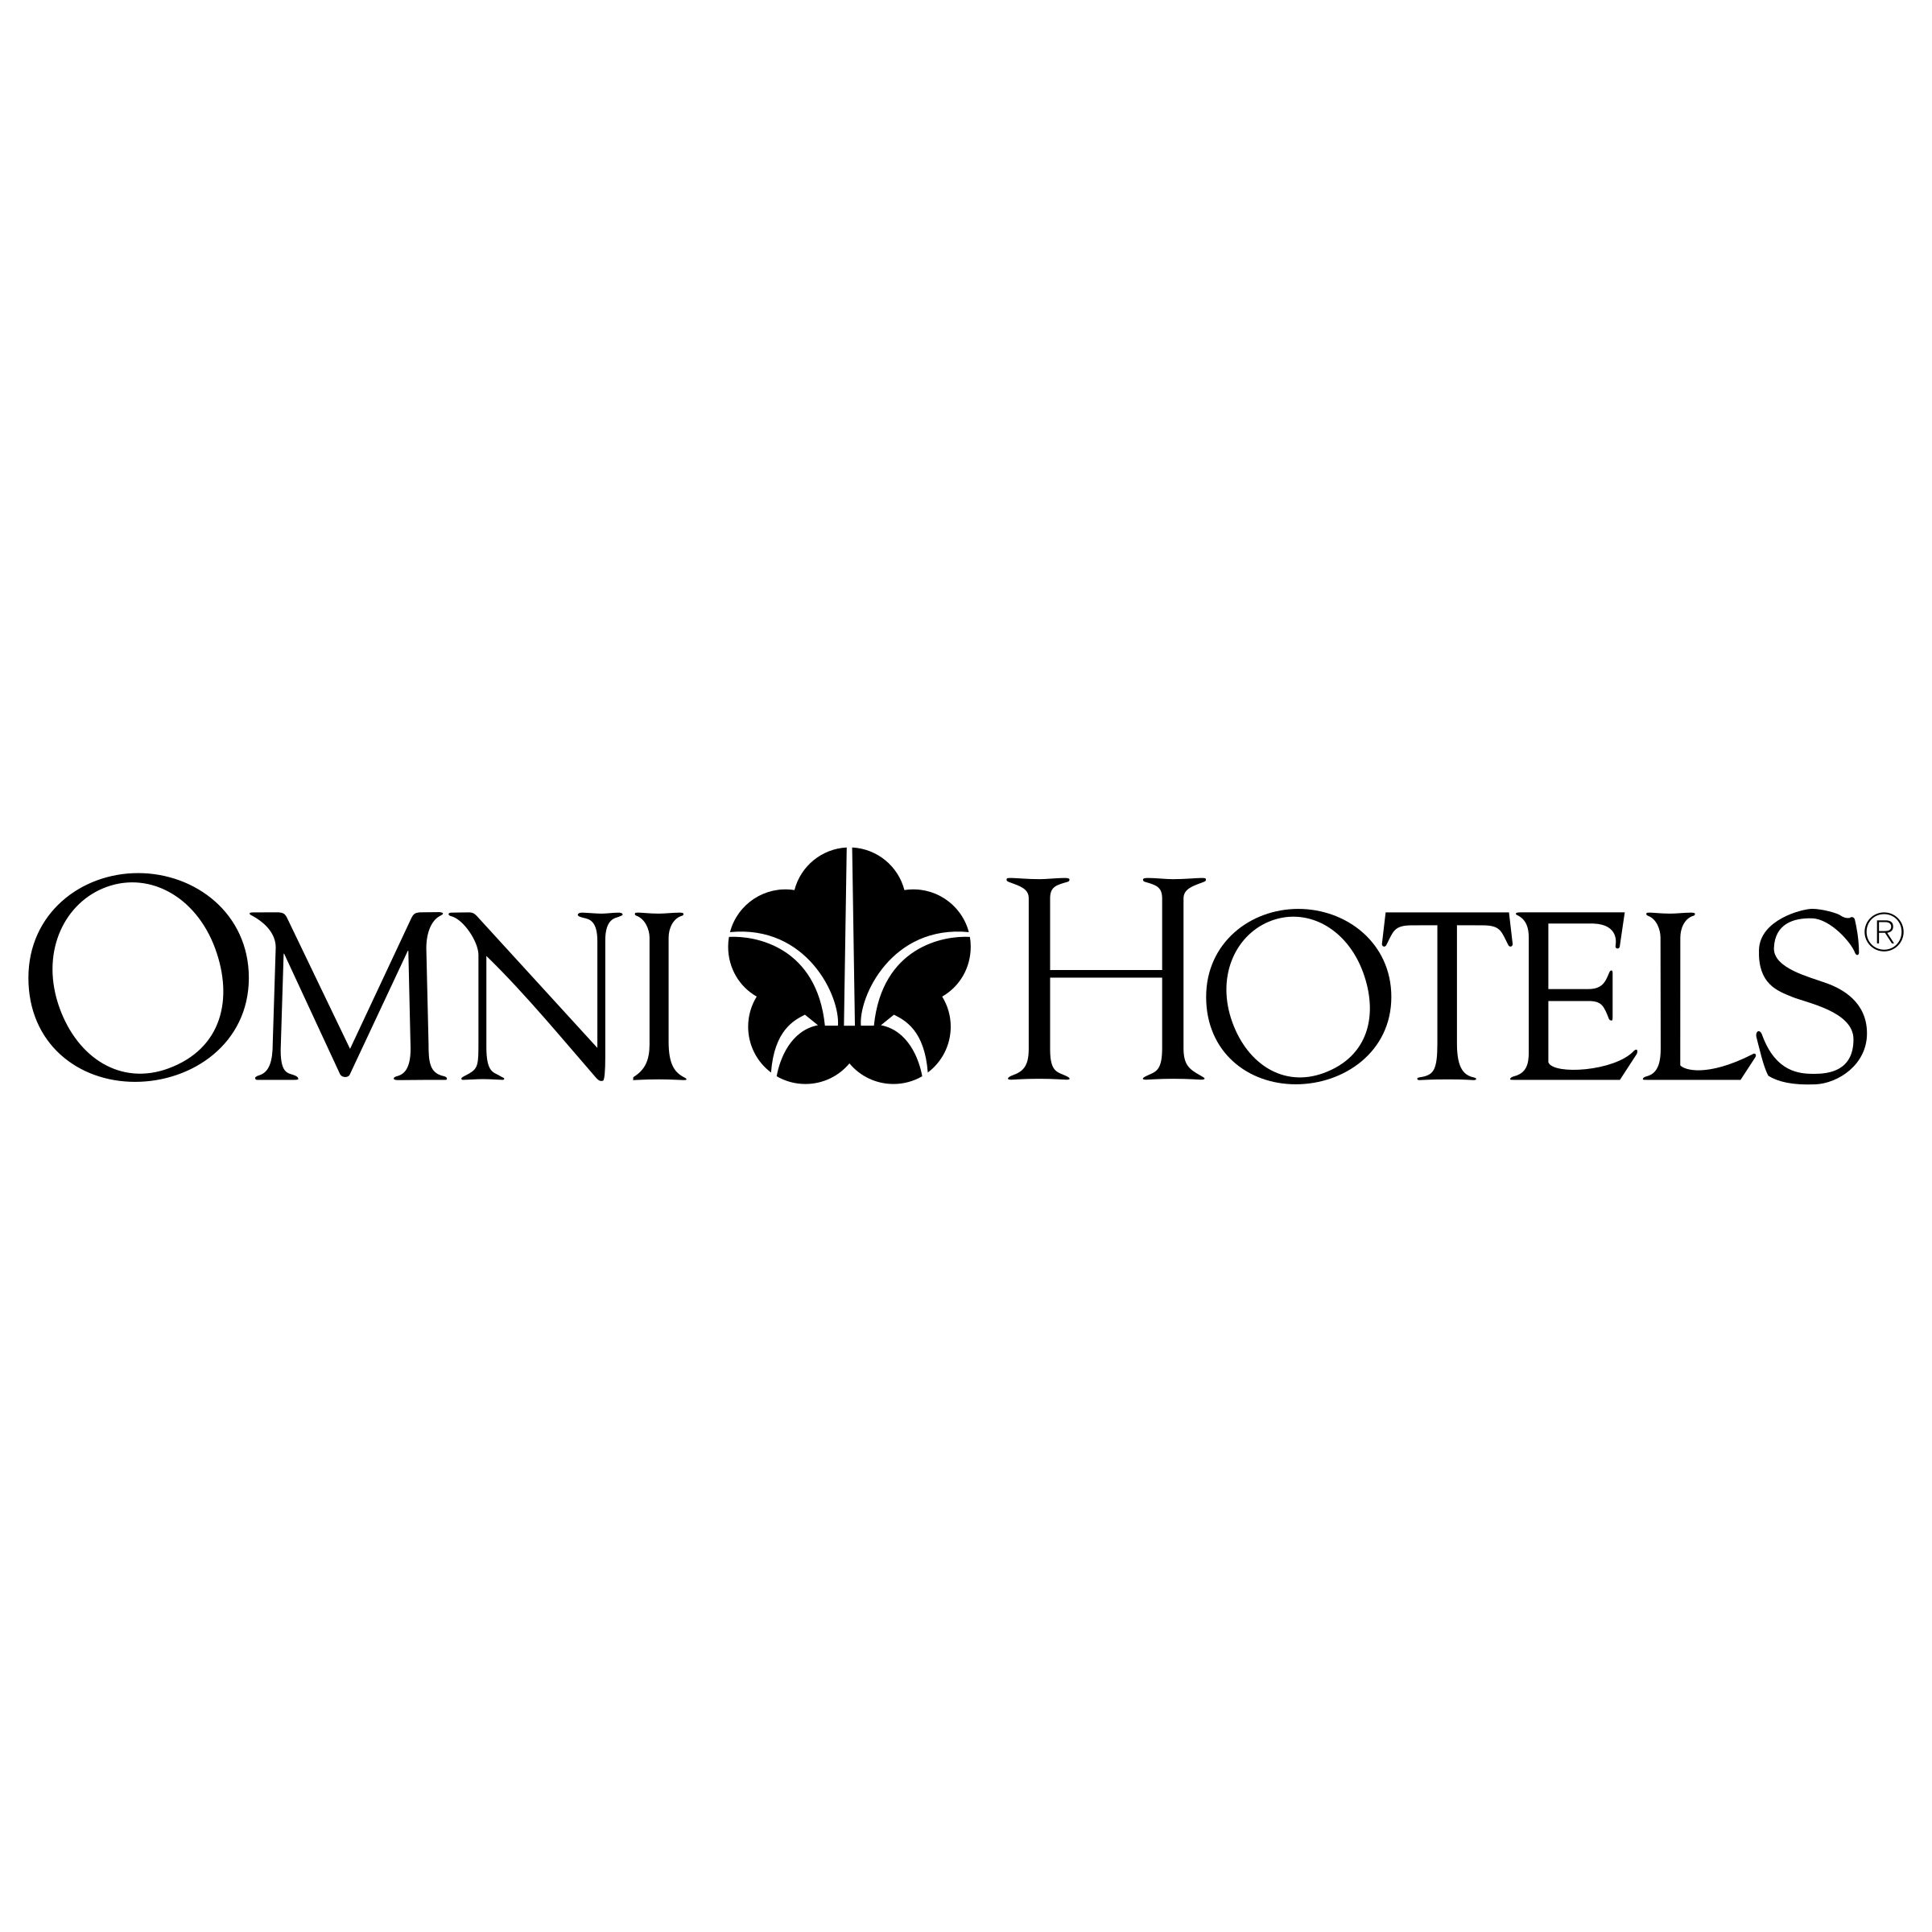 omni-hotels-logo-png-transparent.jpg